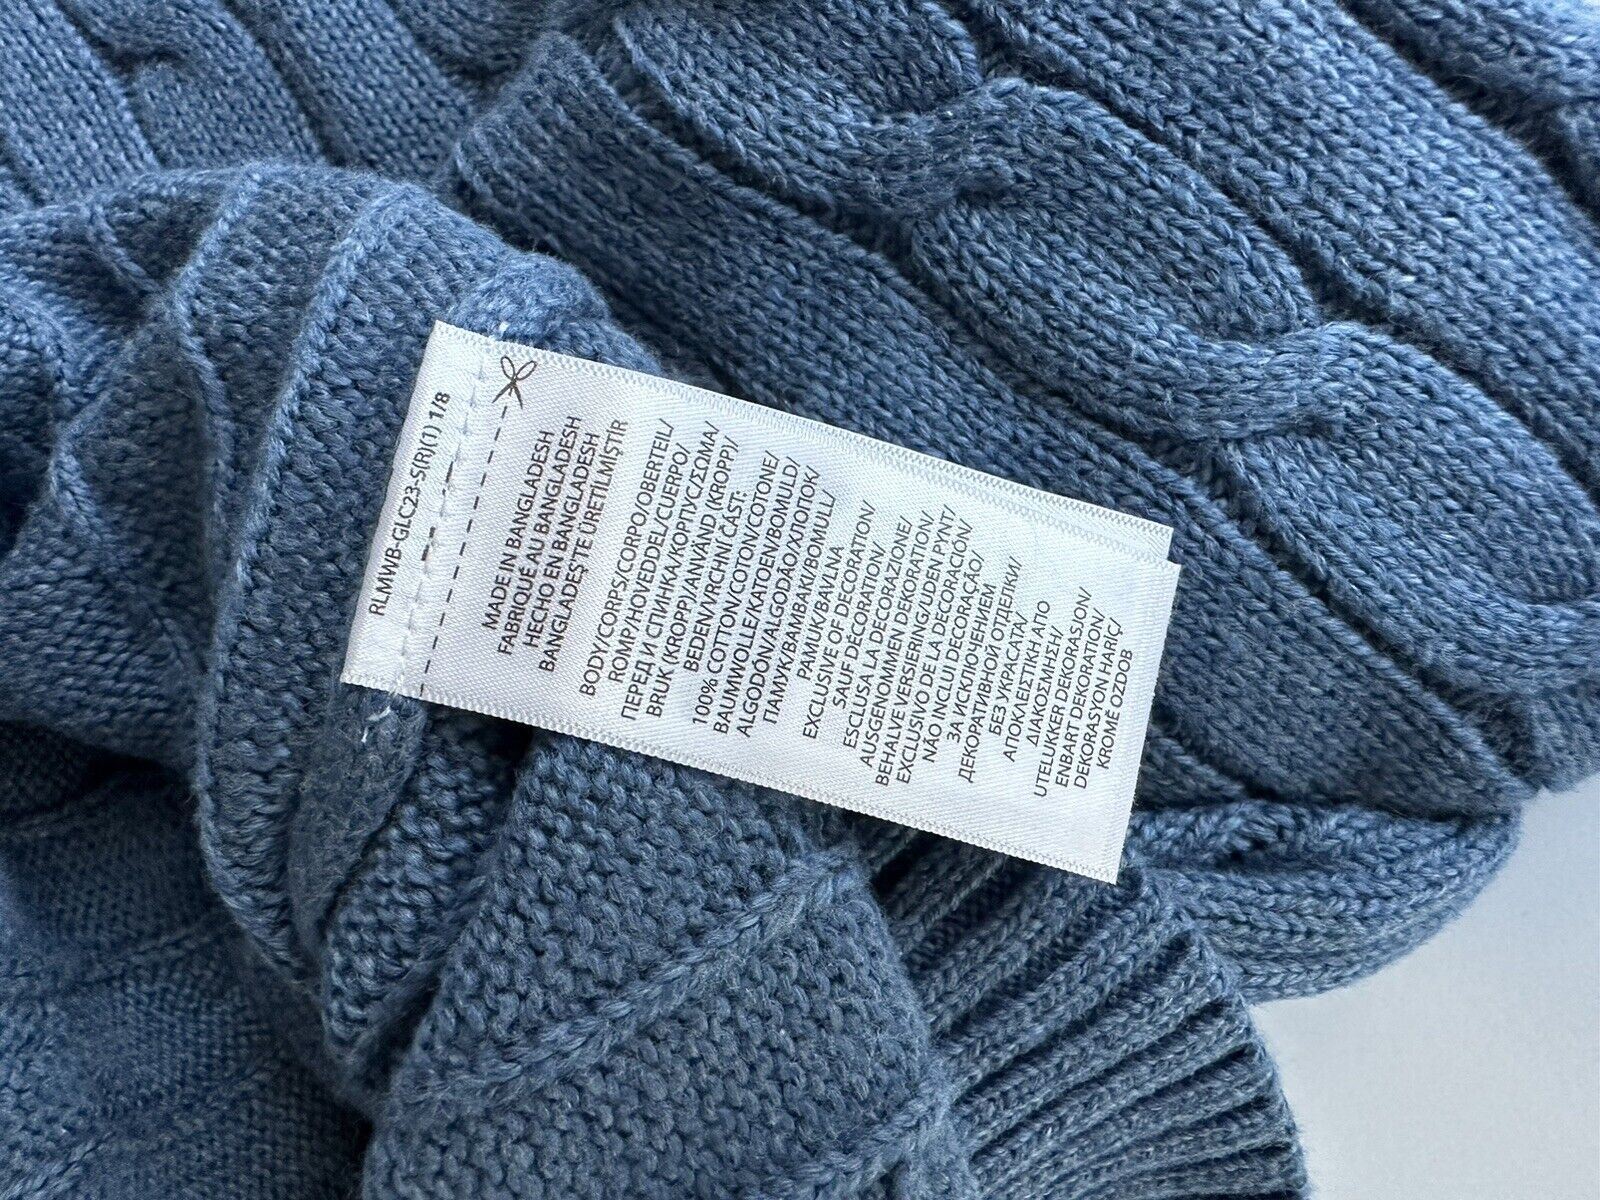 Мужской вязаный свитер синего цвета Polo Ralph Lauren, размер 2XL/2TG, NWT 138 долларов США 